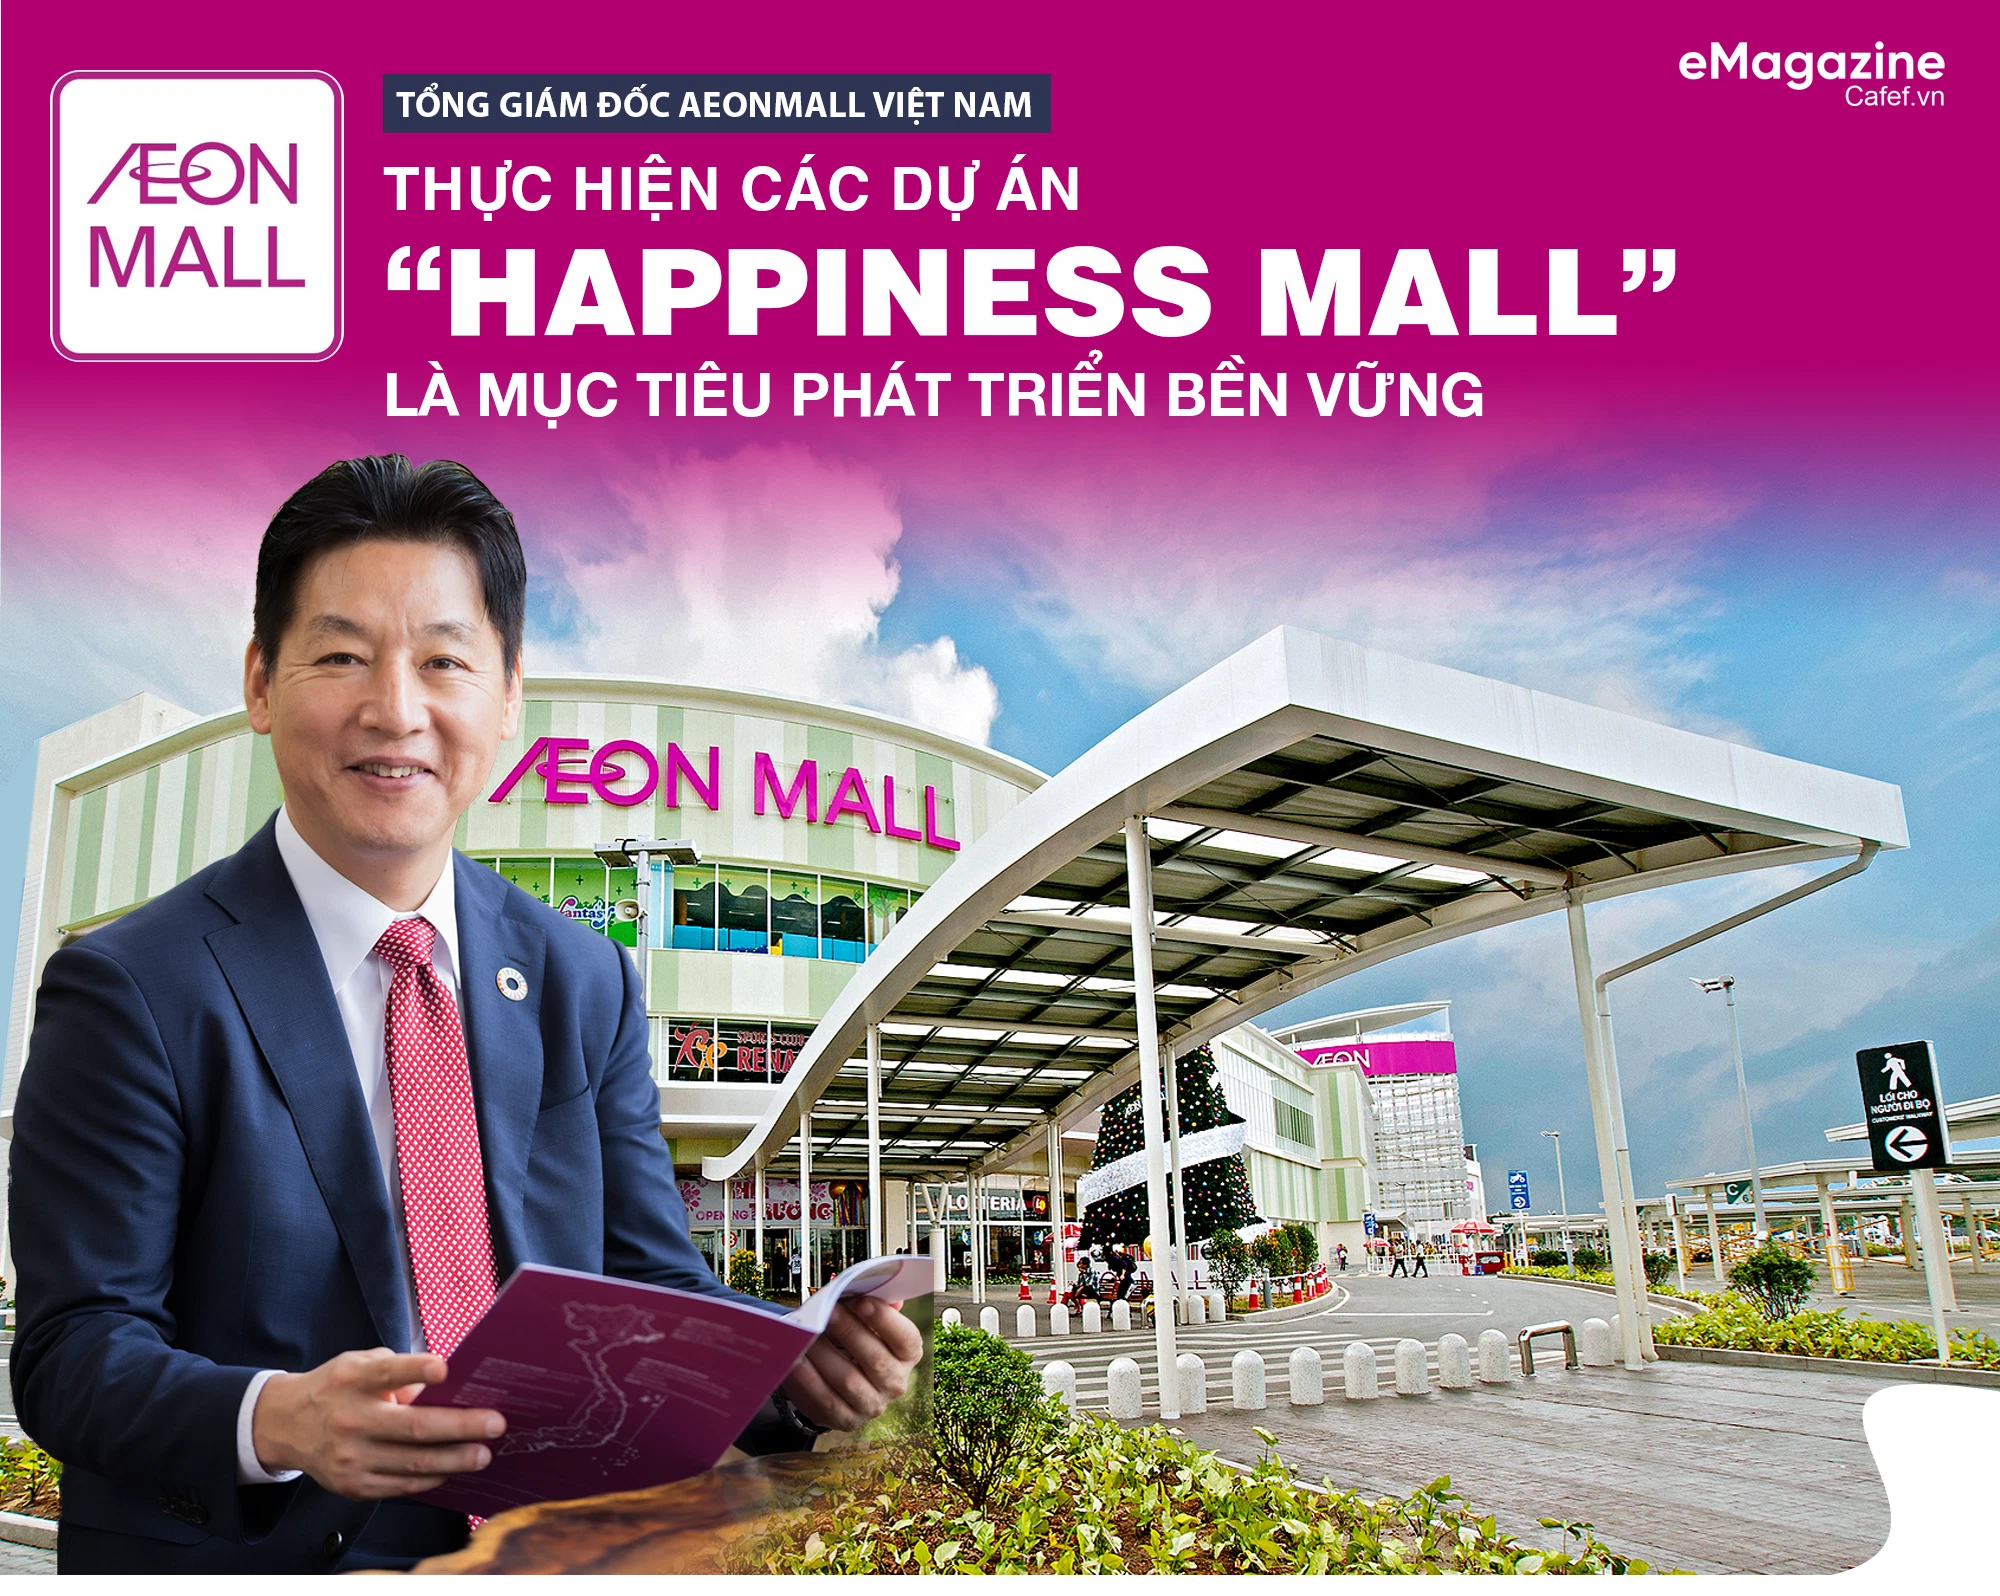 Happiness Mall là mục tiêu phát triển bền vững